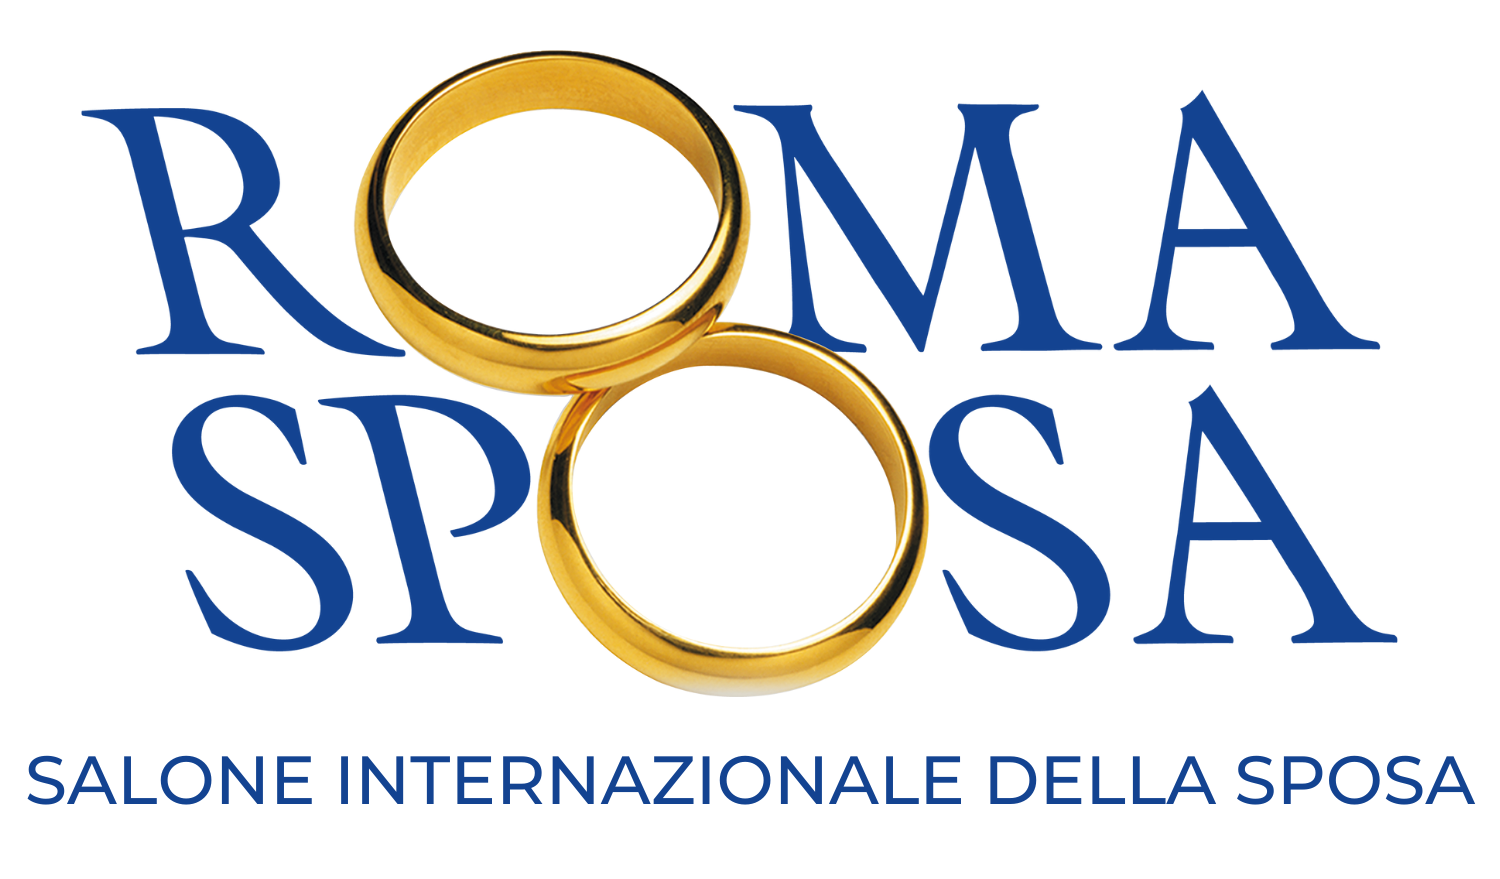 RomaSposa Salone Internazionale della Sposa